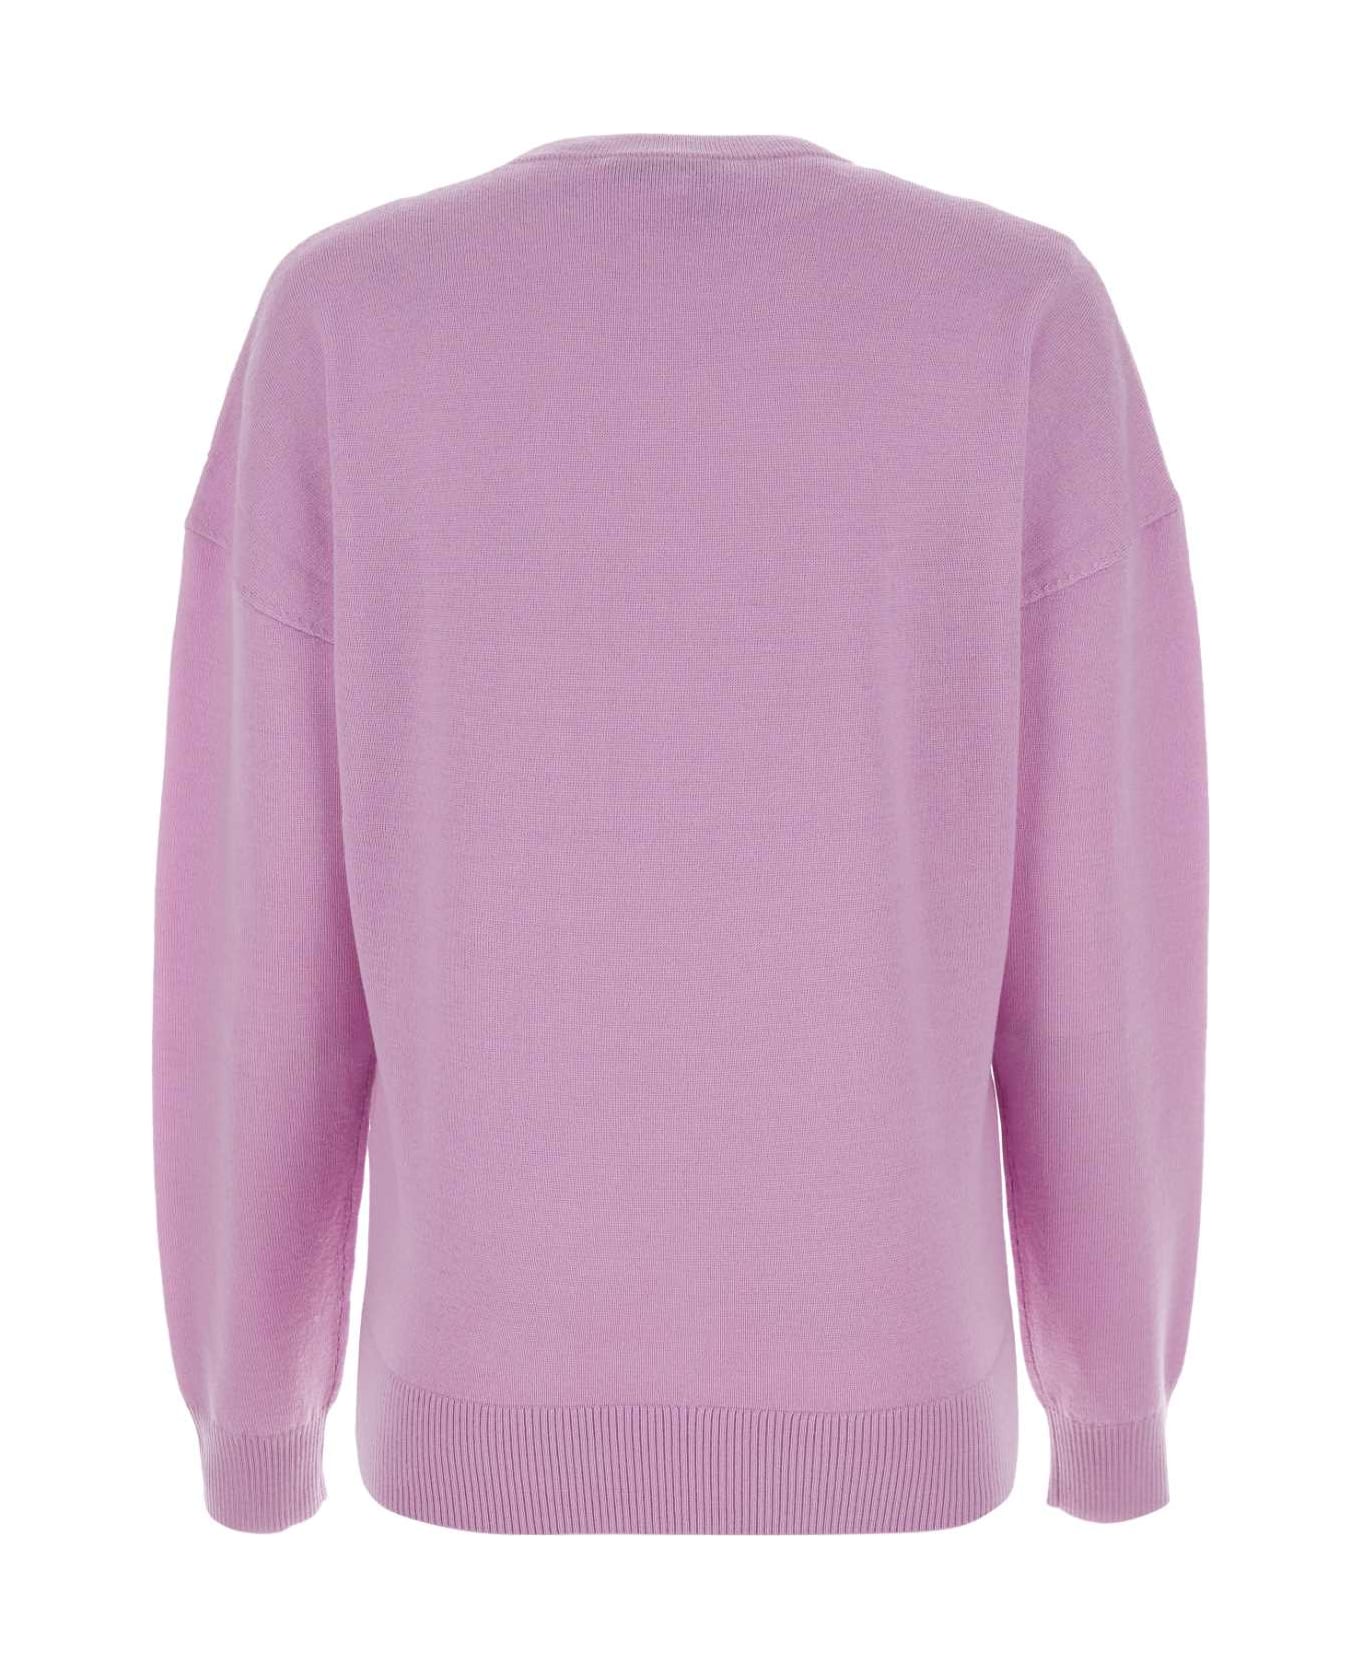 J.W. Anderson Lilac Wool Sweater - PURPLE